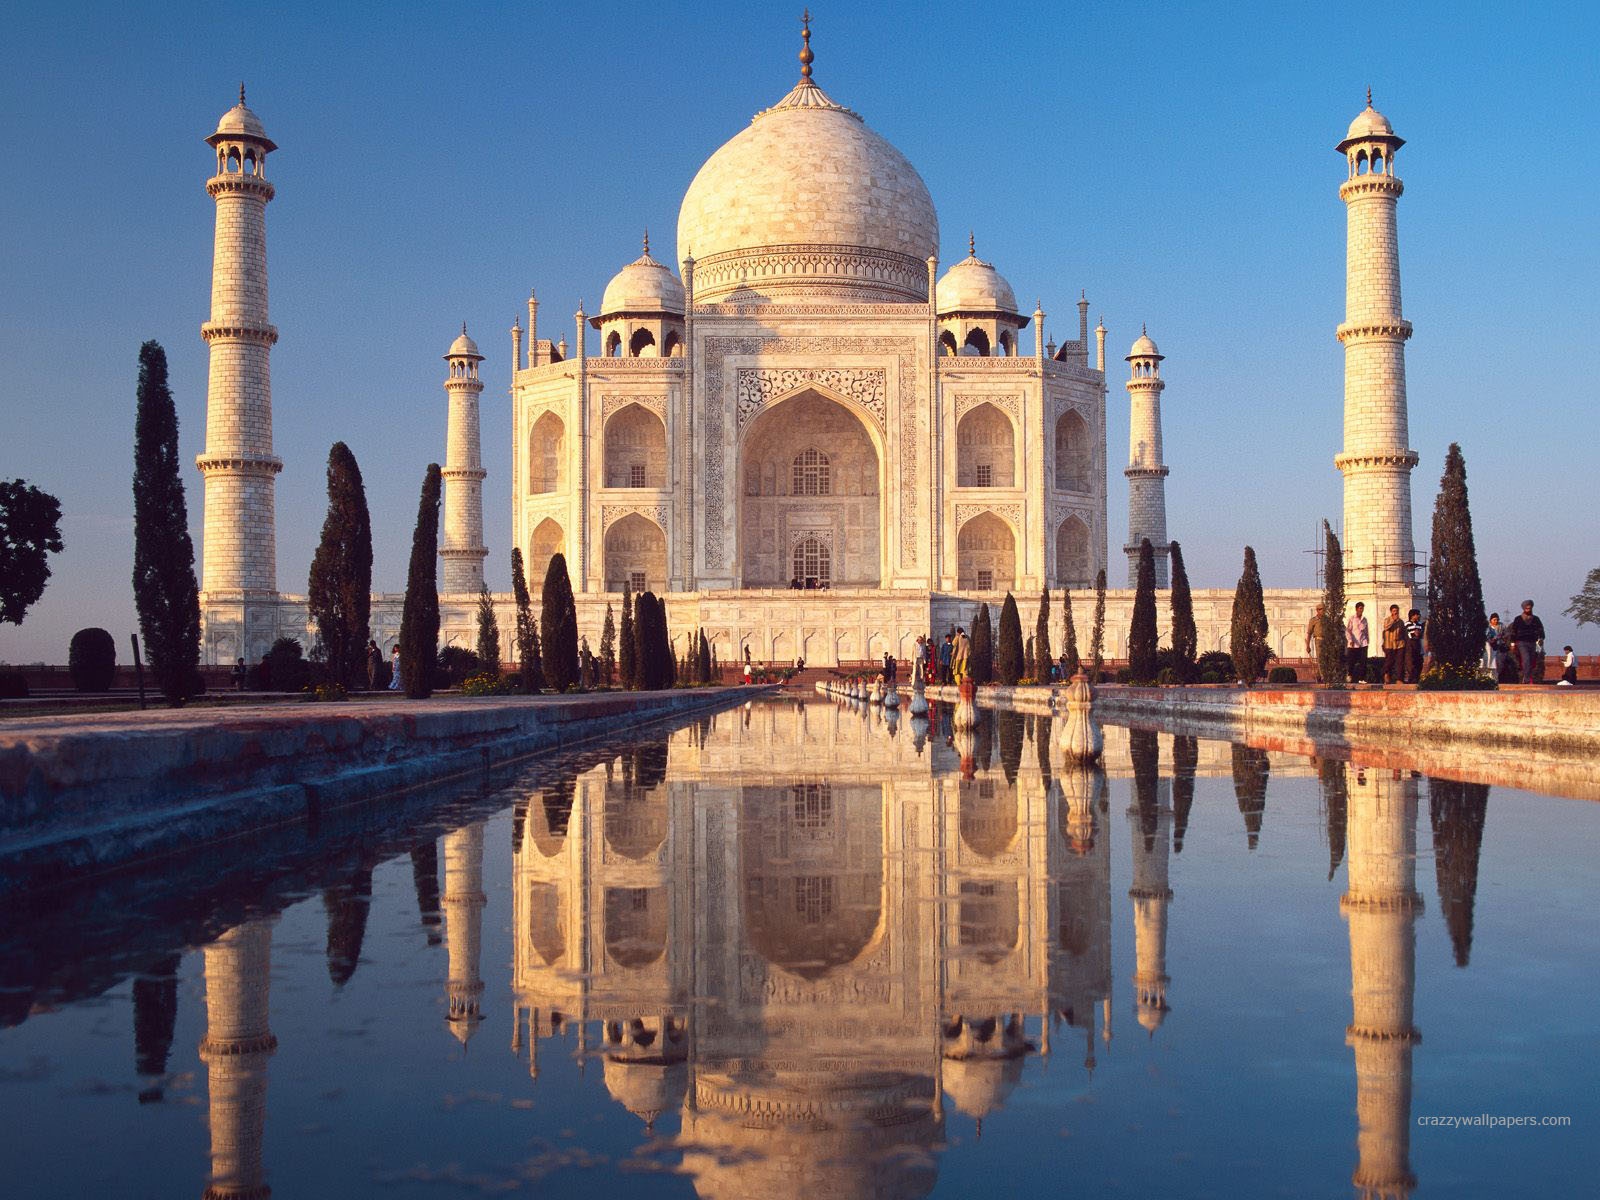 Taj Mahal Agra India Hd Wallpapers In Jpg Format For Free Download